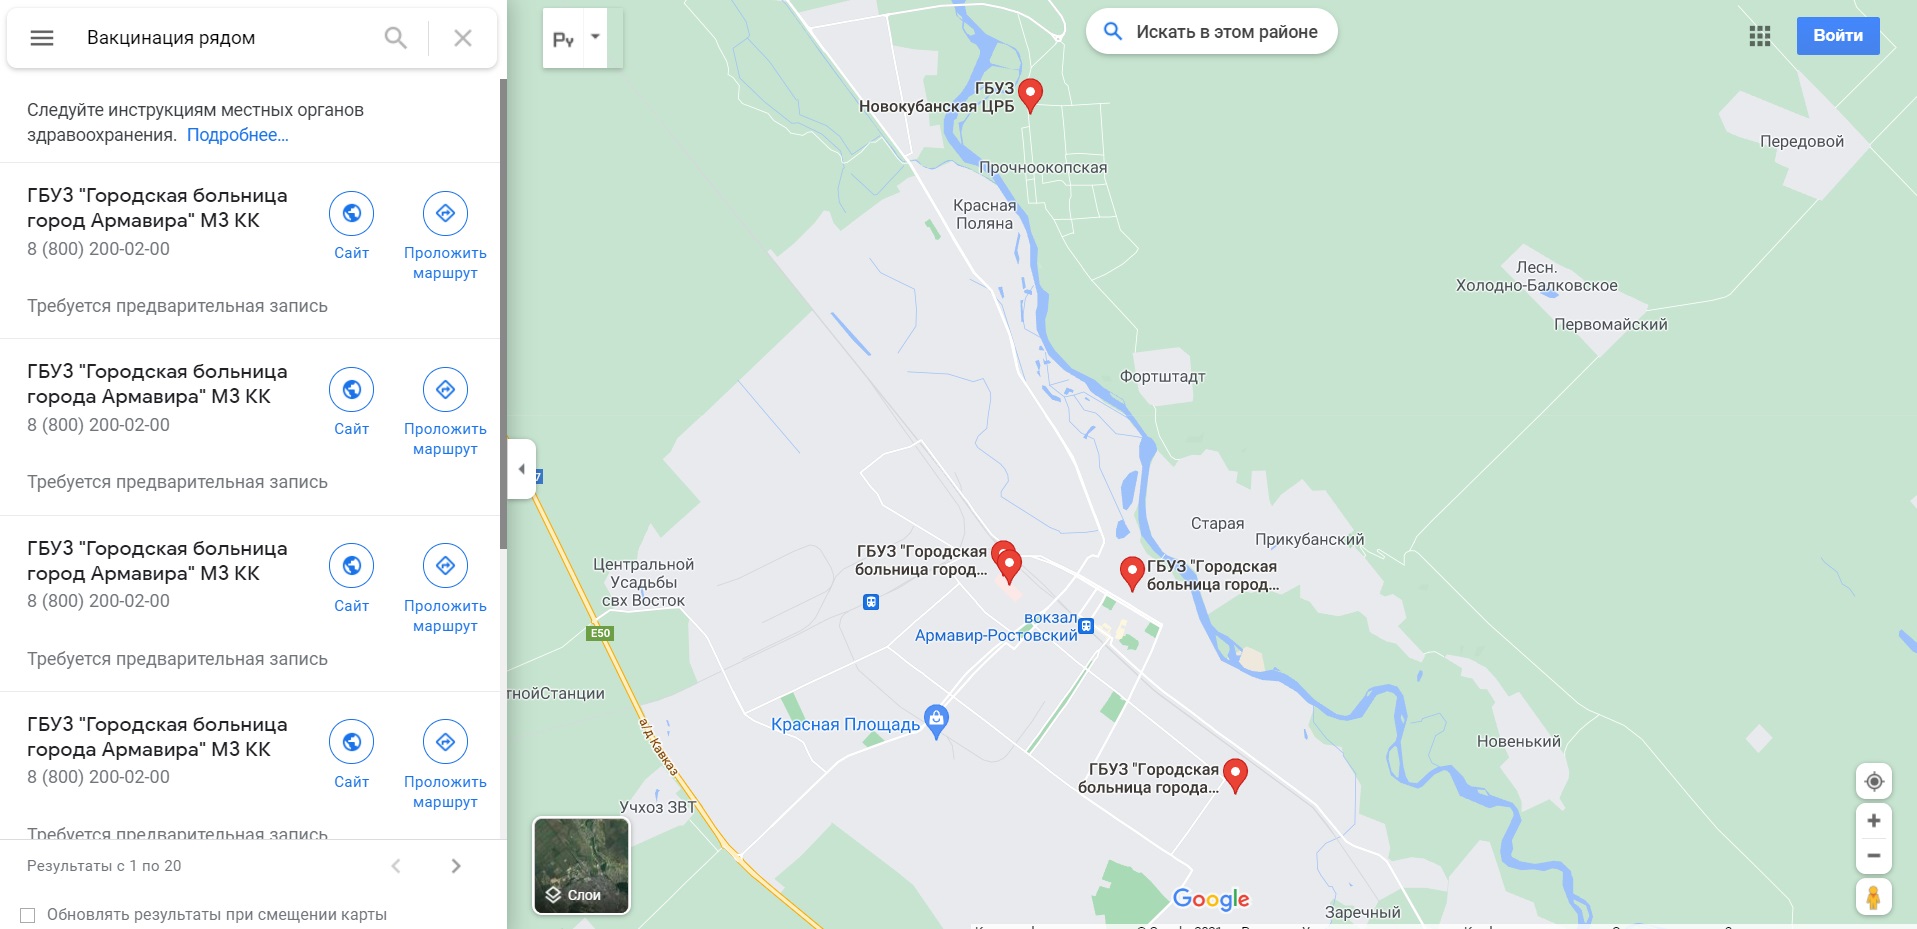 На карты Google добавили четыре пункта вакцинации в Армавире